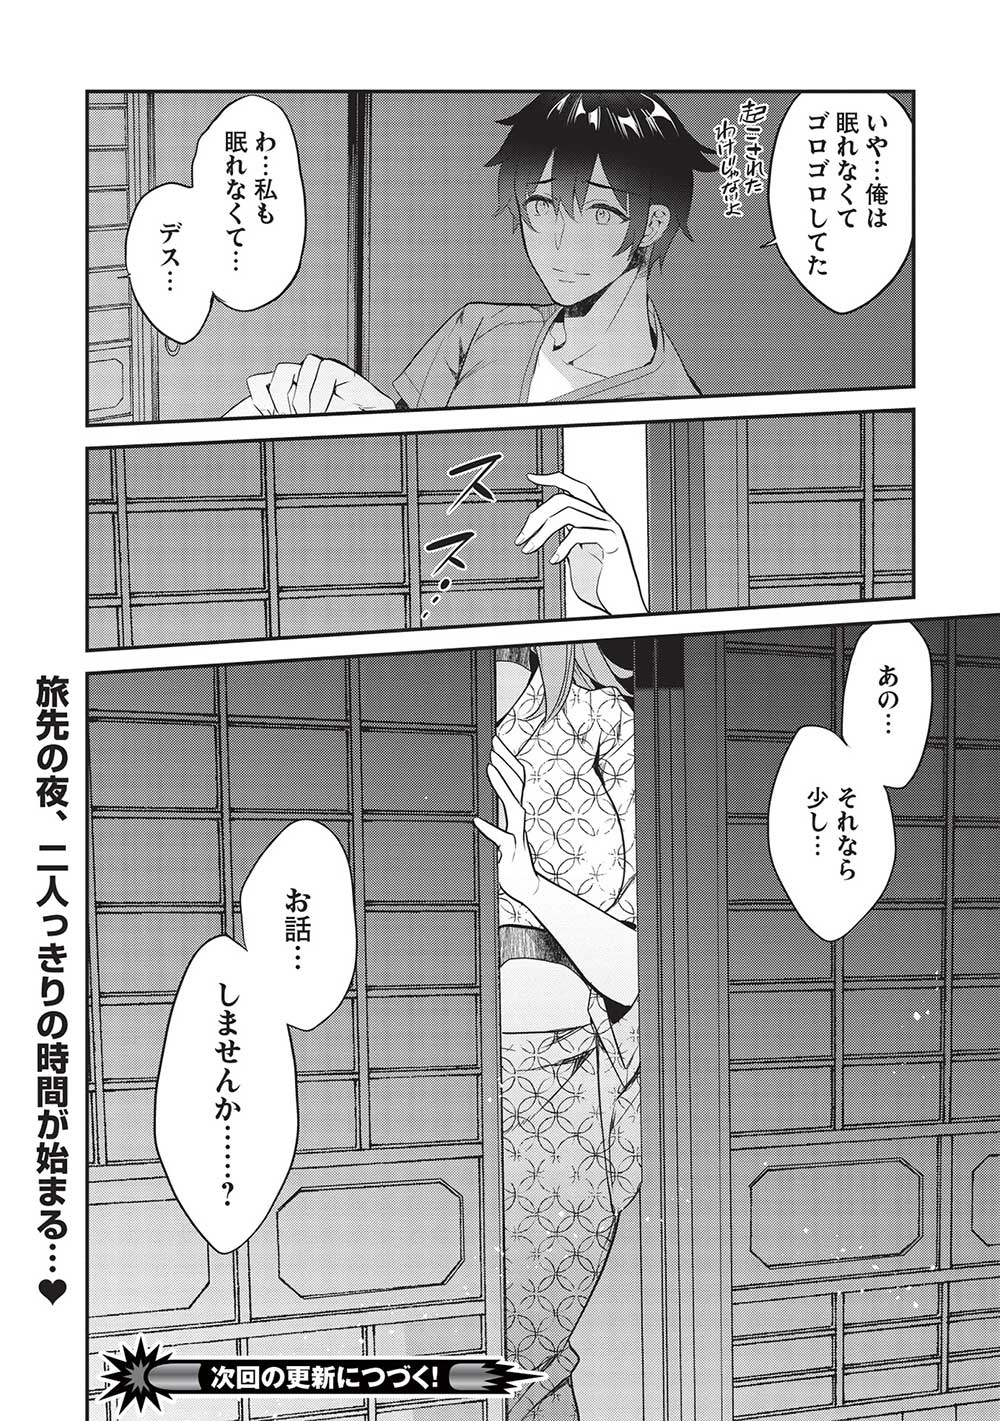 Kamiyama-san No Kami Bukuro No Naka Ni Wa - Chapter 16 - Page 24